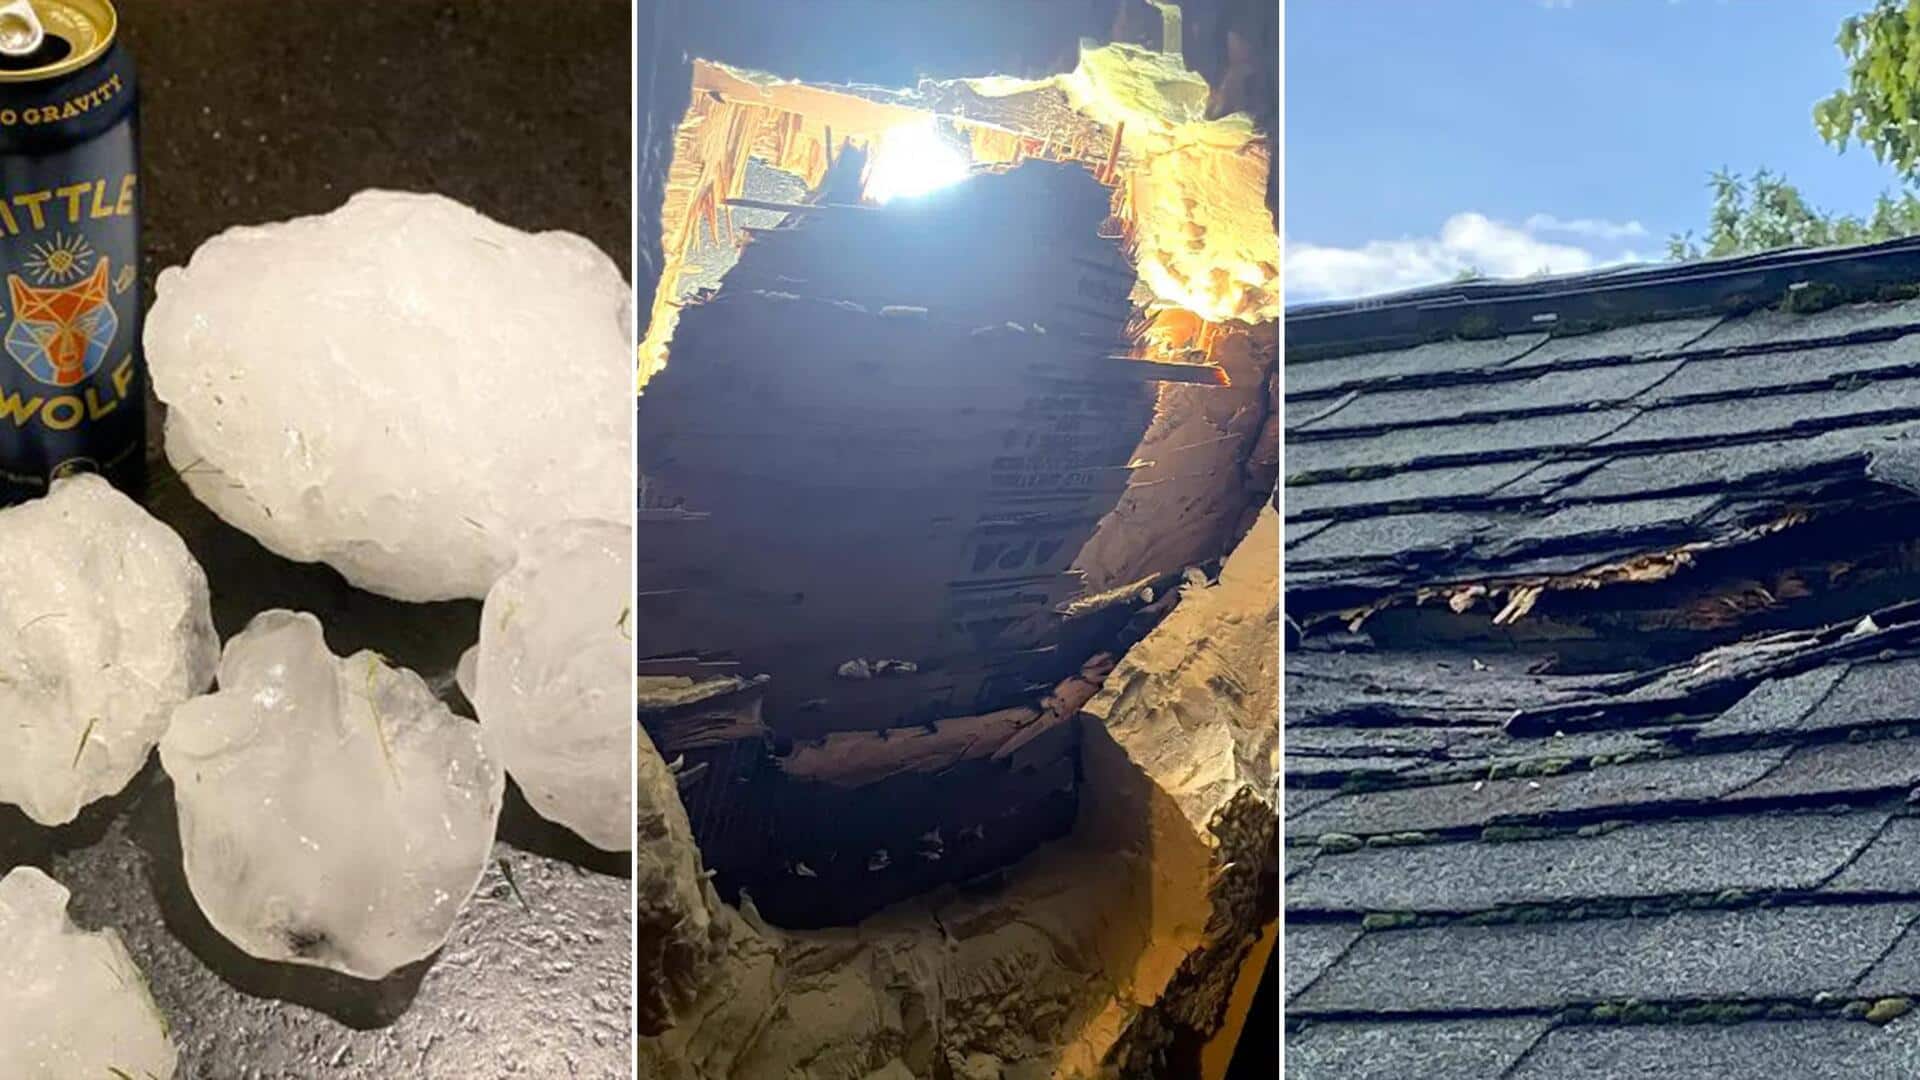 अमेरिका: आसमान सेे गिरे बर्फ के बड़े टुकड़ों से टूट गई घर की छत, जानिये मामला